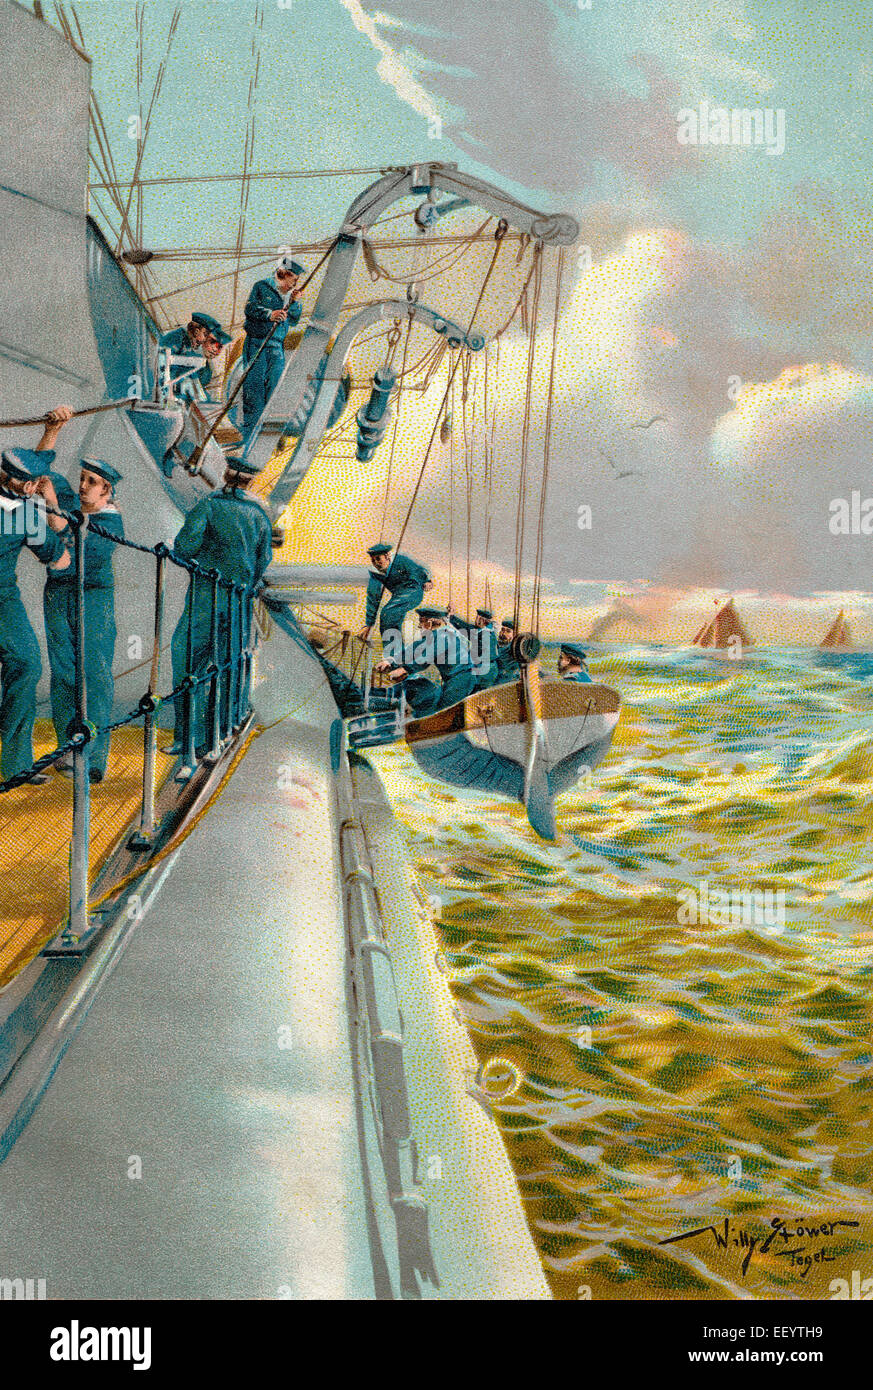 Manoeuvres en bateau avec un bateau de sauvetage, c. 1900, l'Allemagne, l'Bootsmanöver auf Voir mit einem Rettungsboot, ca. 1900, Deutschland Banque D'Images